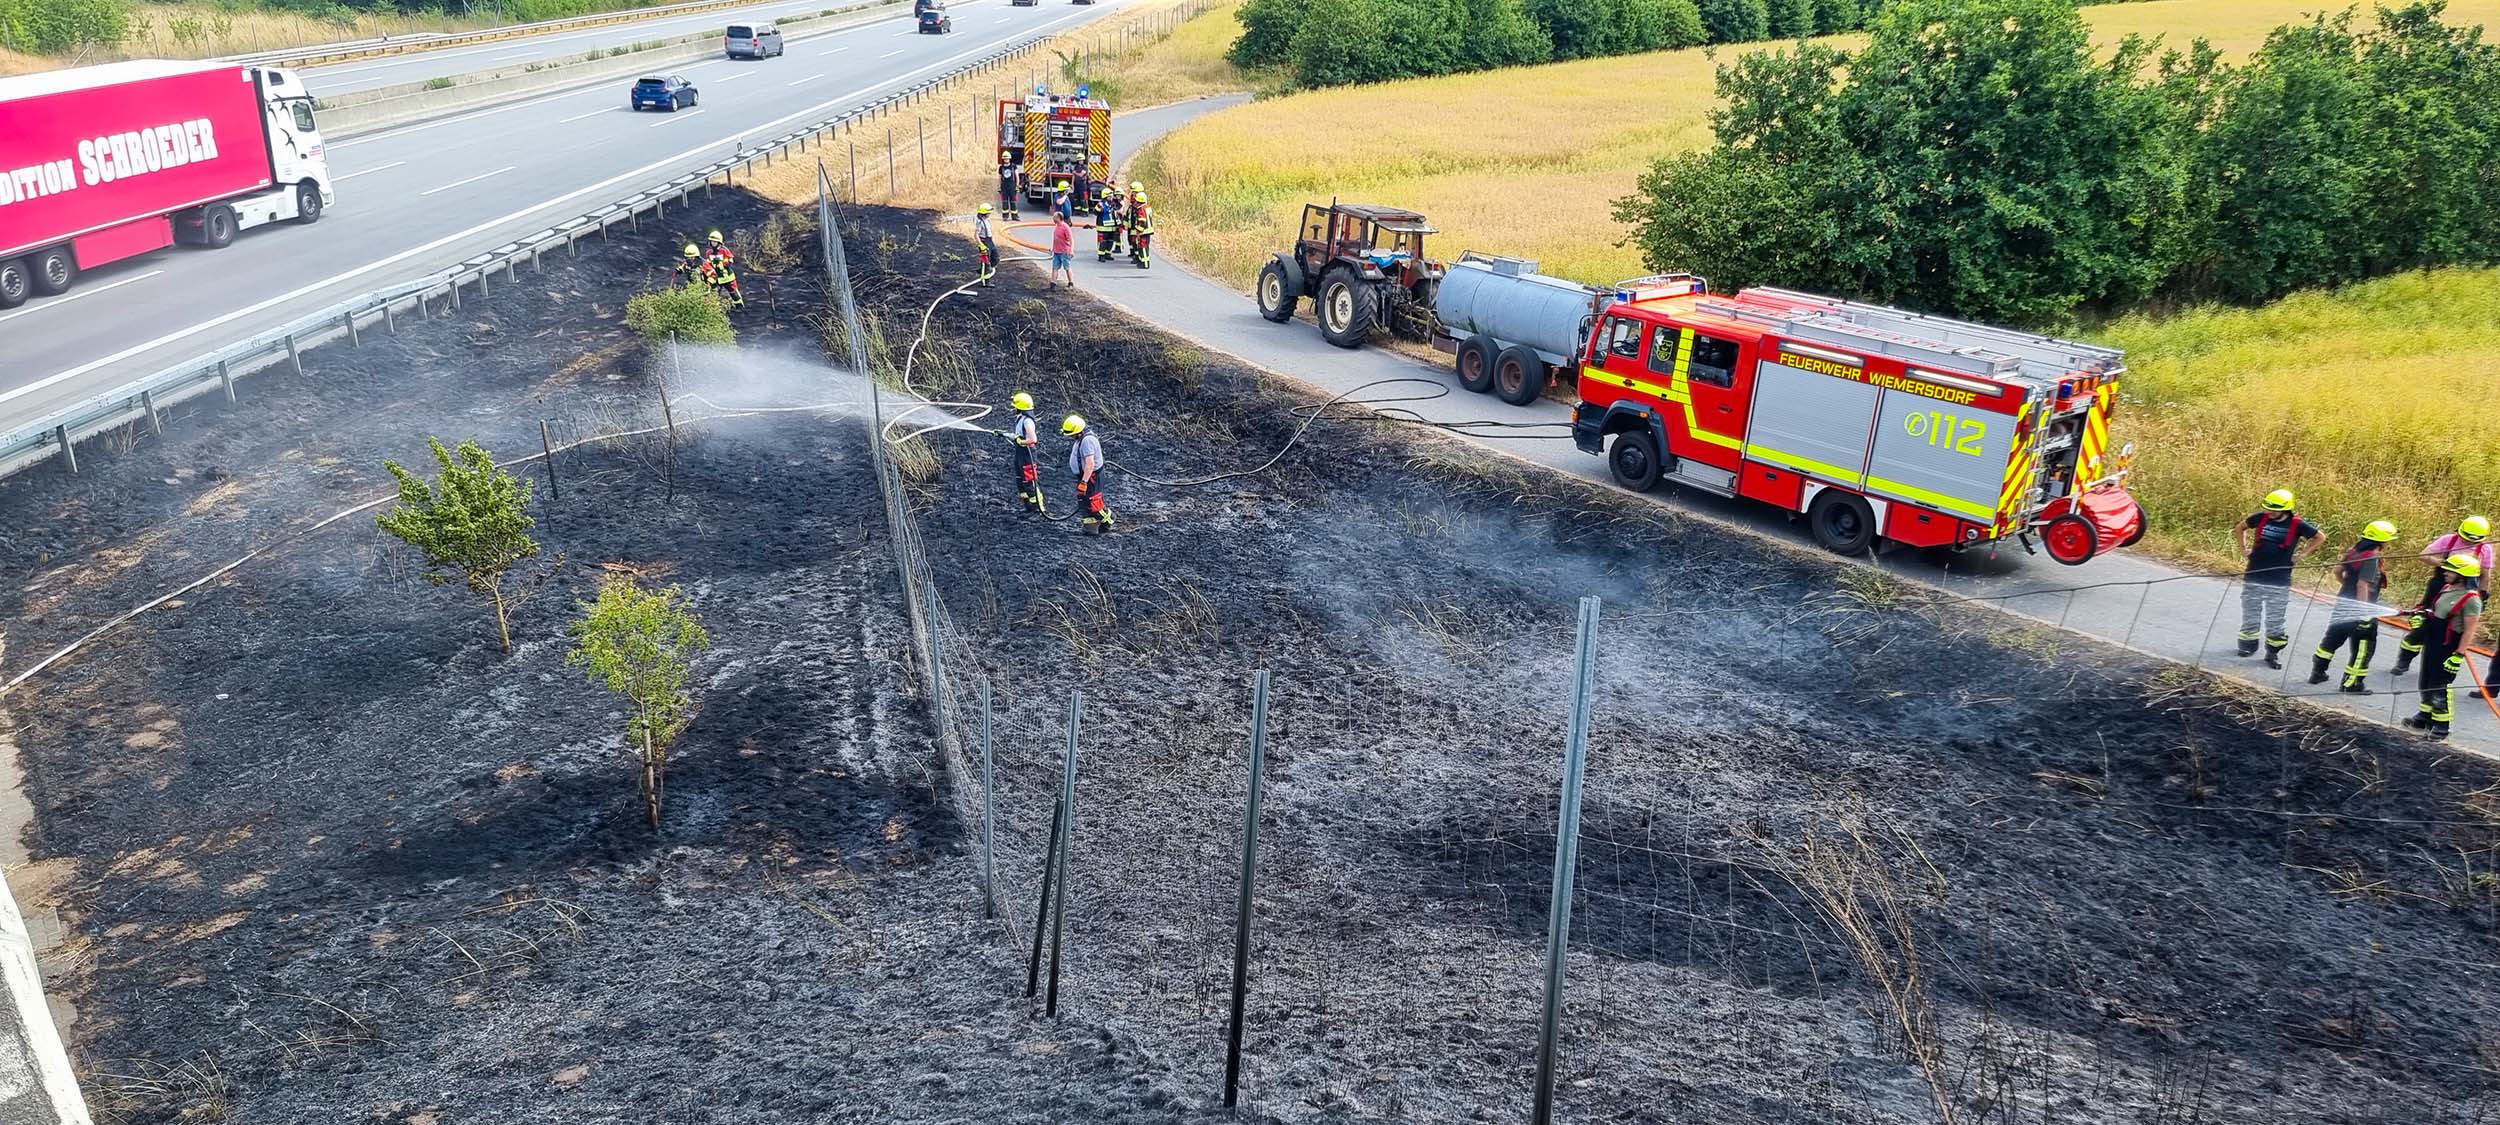 Auf einer Fläche neben der A7 bei Großenaspe brach am Sonntagnachmittag ein Brand aus.